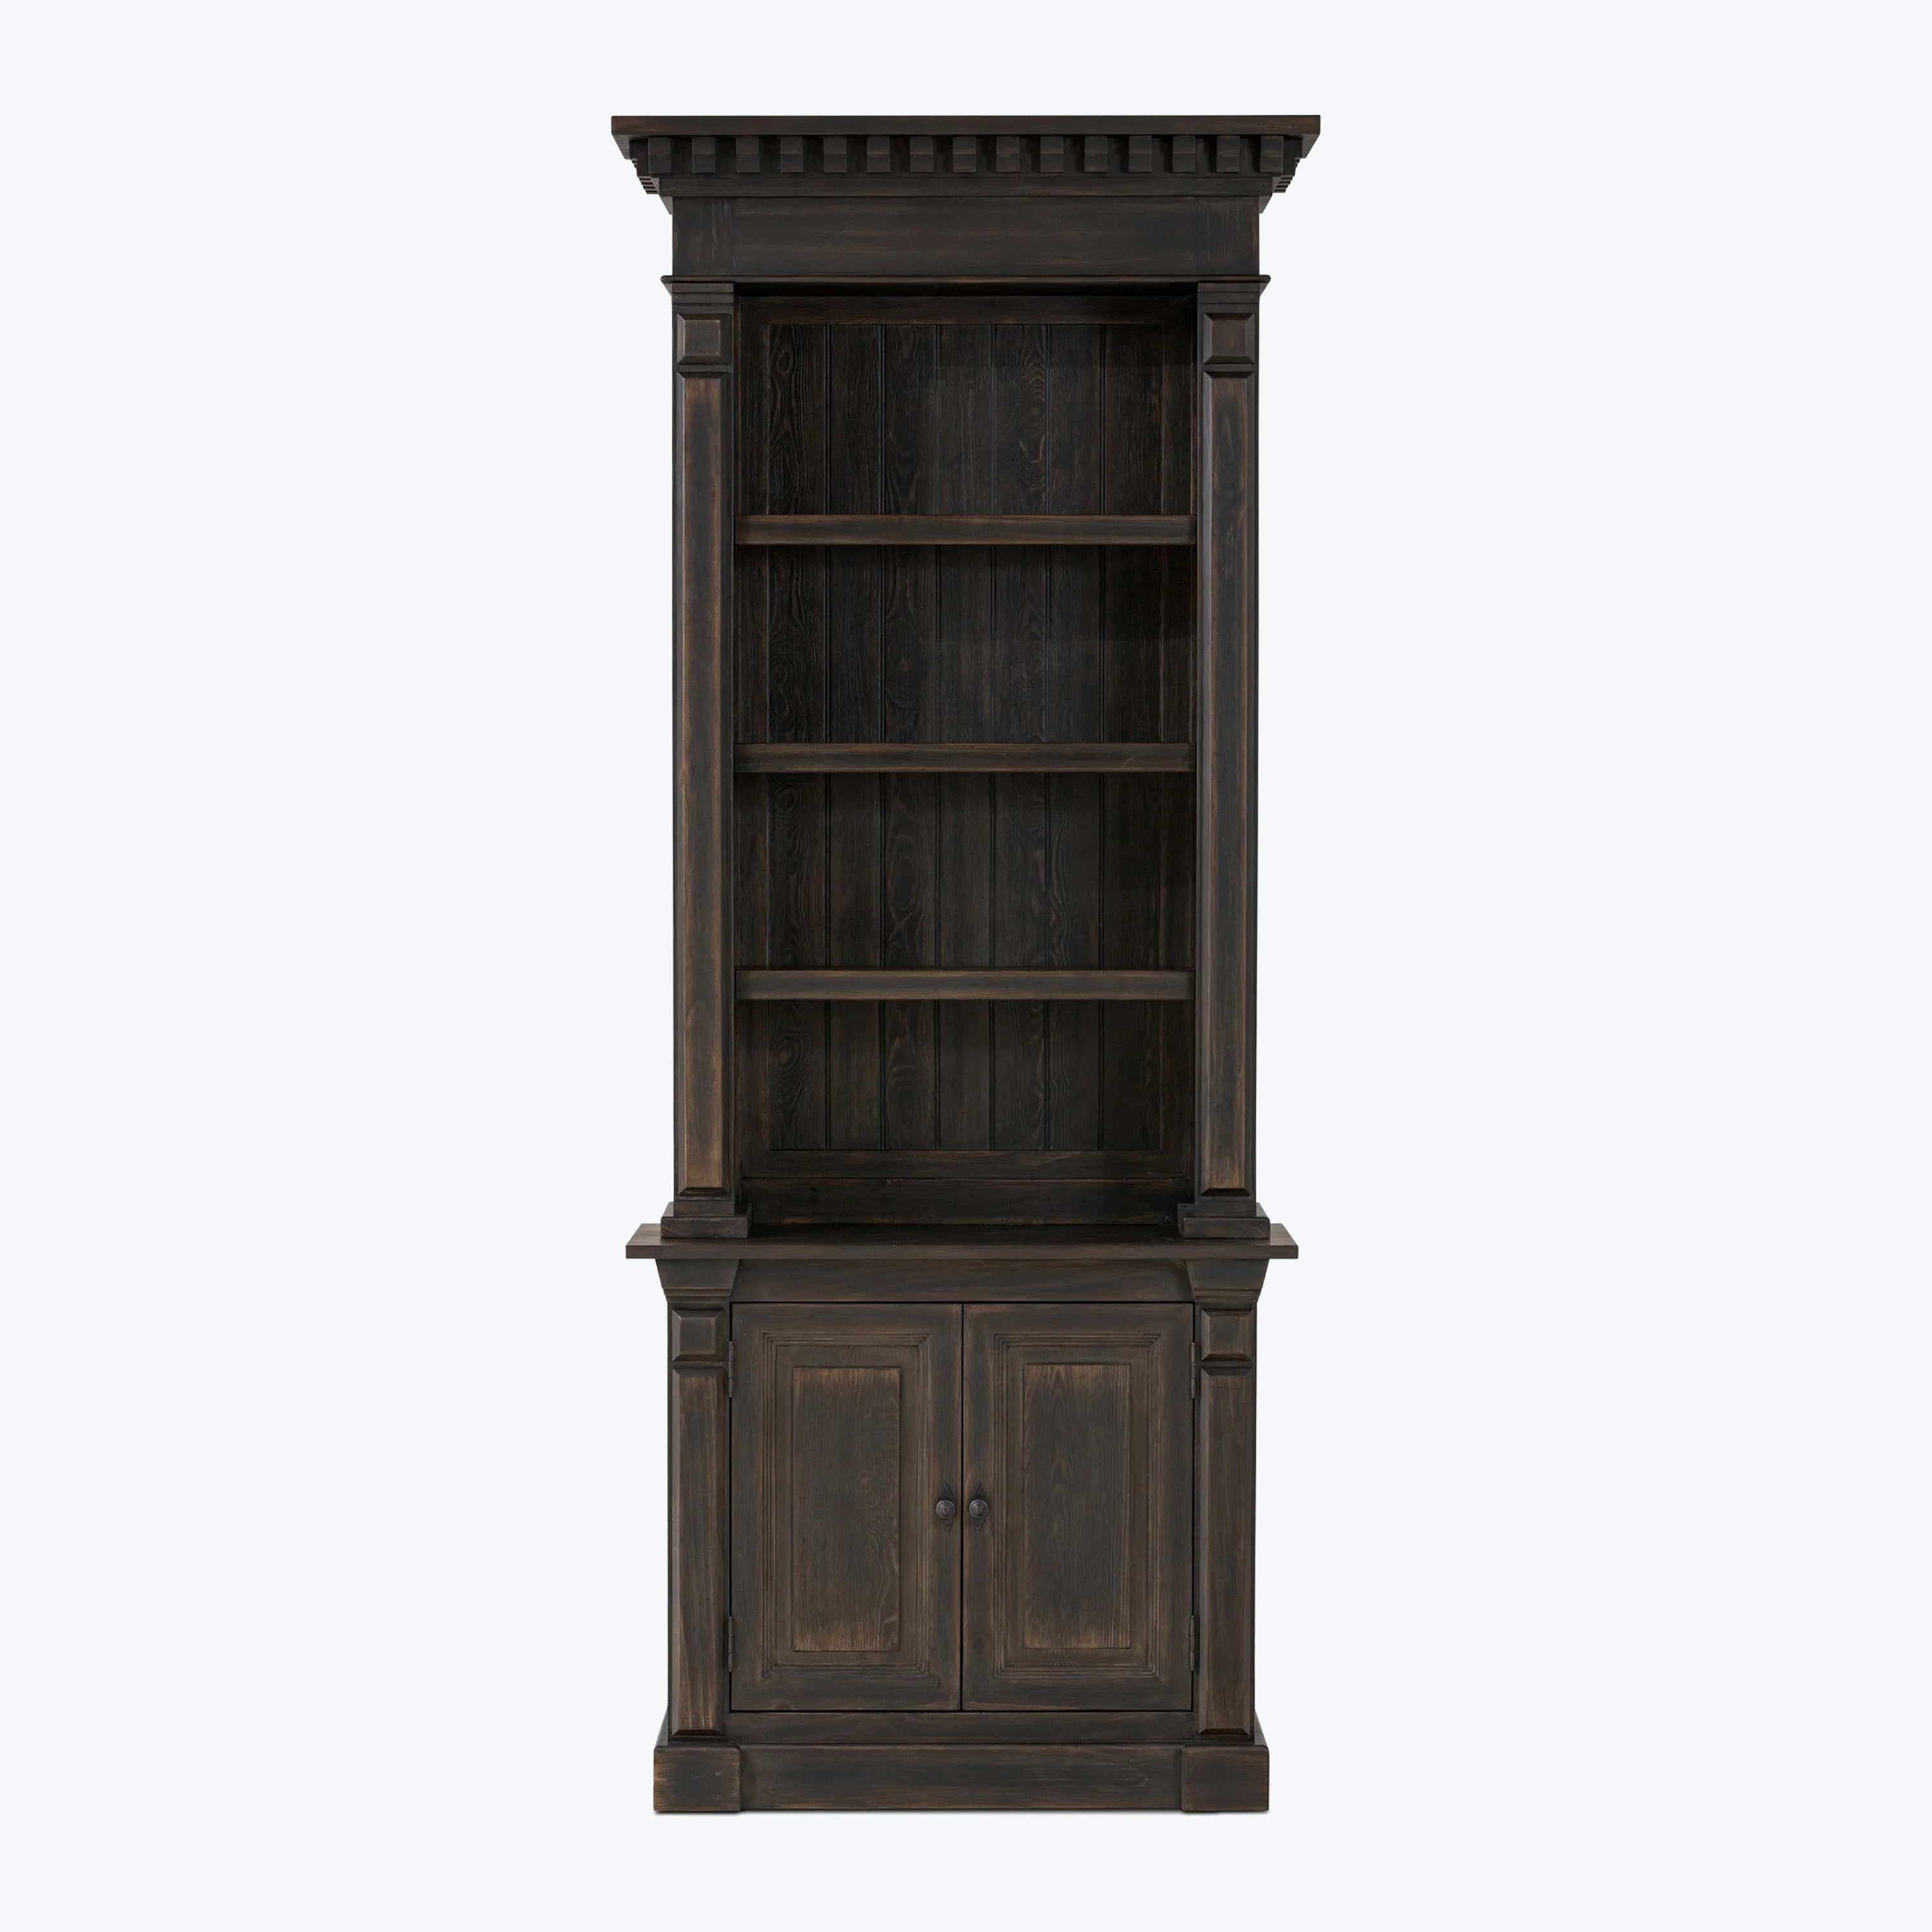 Nostalgia Found Cabinet Bookcase